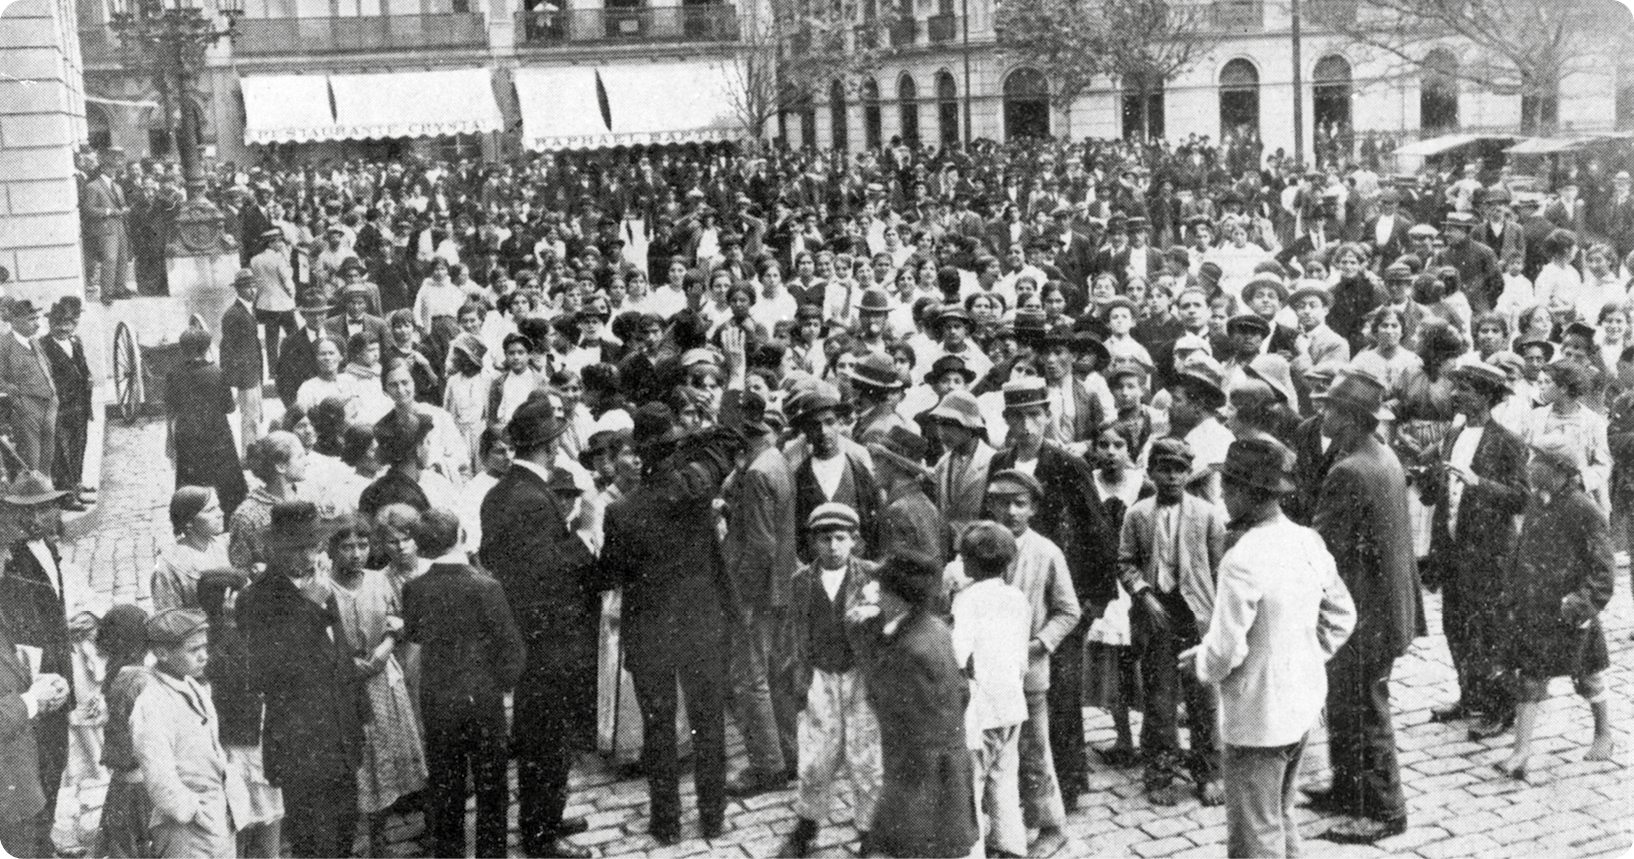 Fotografia em preto e branco. Vista de uma praça. Diversas pessoas, usando chapéu, casaco e vestido, estão em pé em uma rua. À esquerda, pessoas sobre uma estrutura elevada.